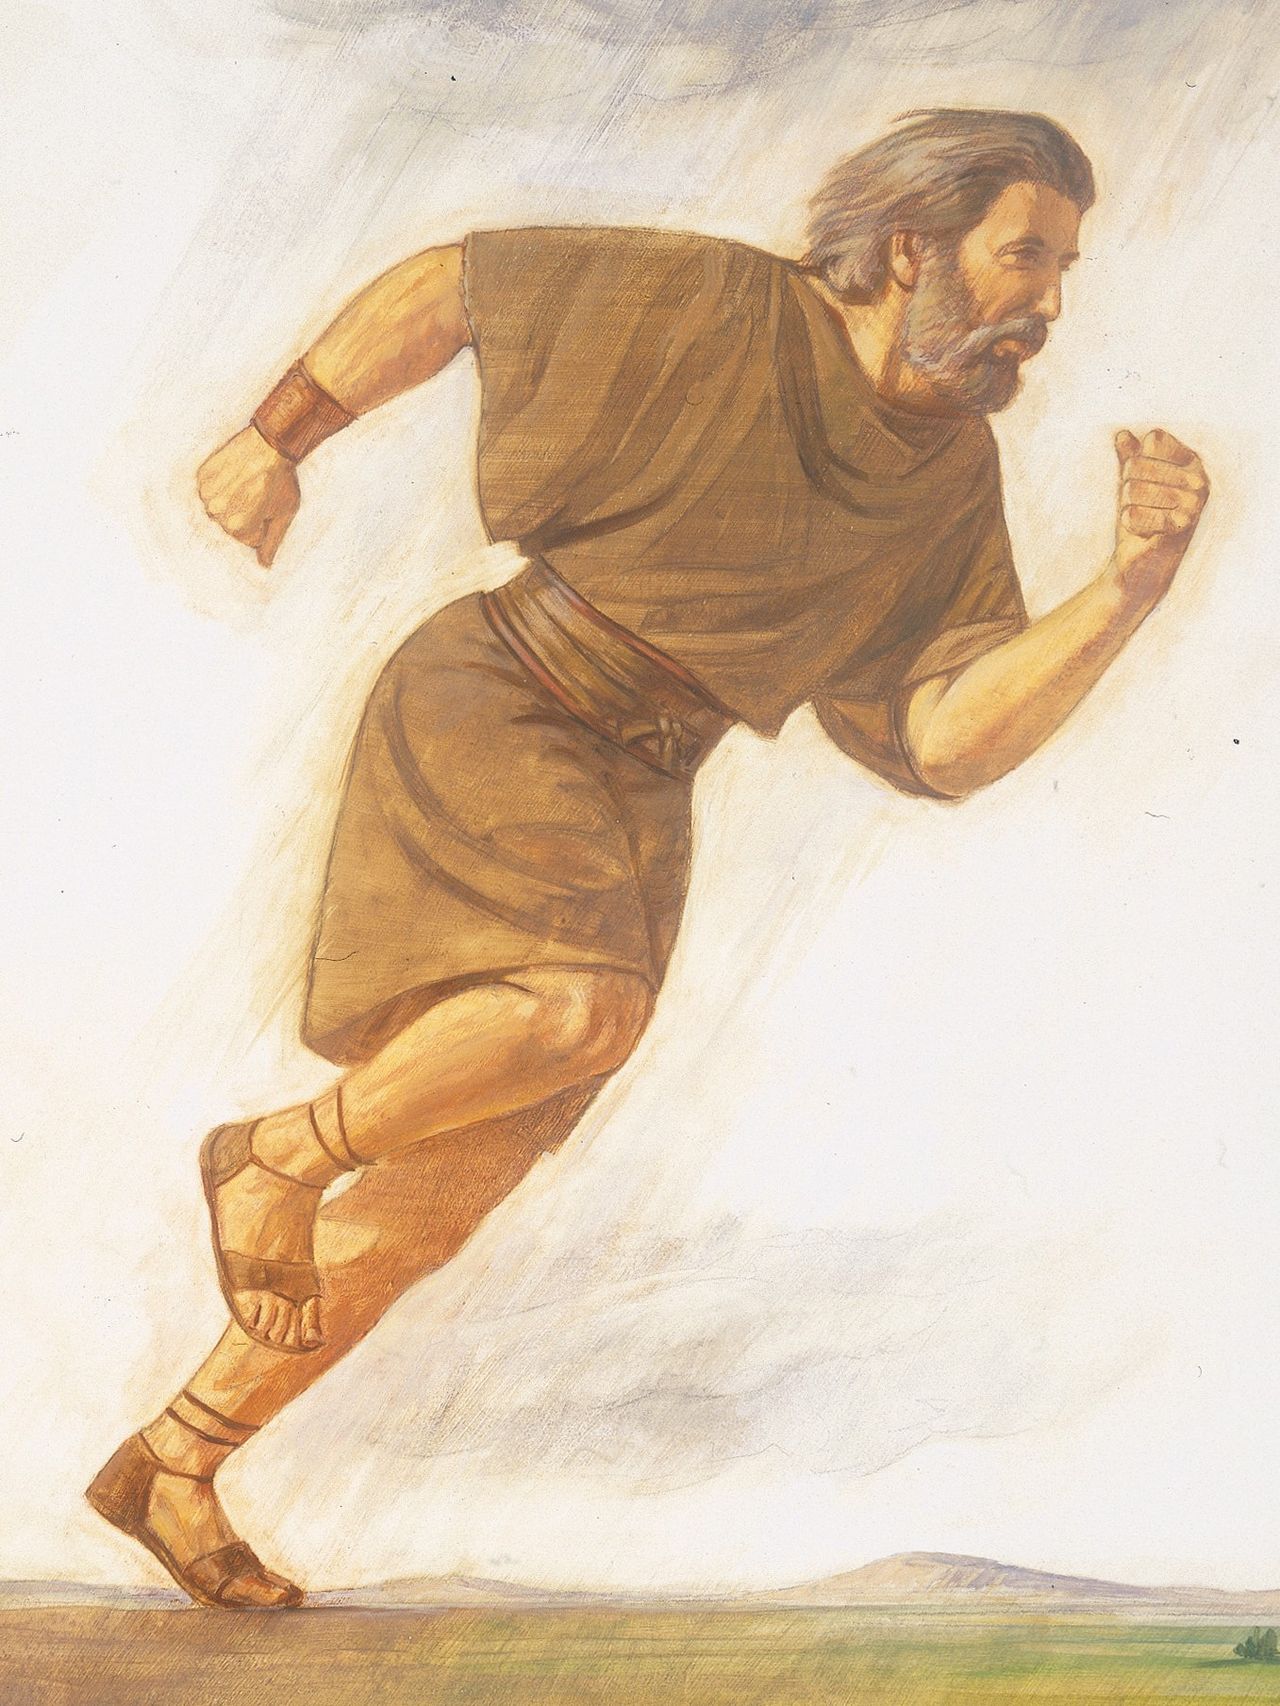 An illustration of Elijah running, by Robert T. Barrett.